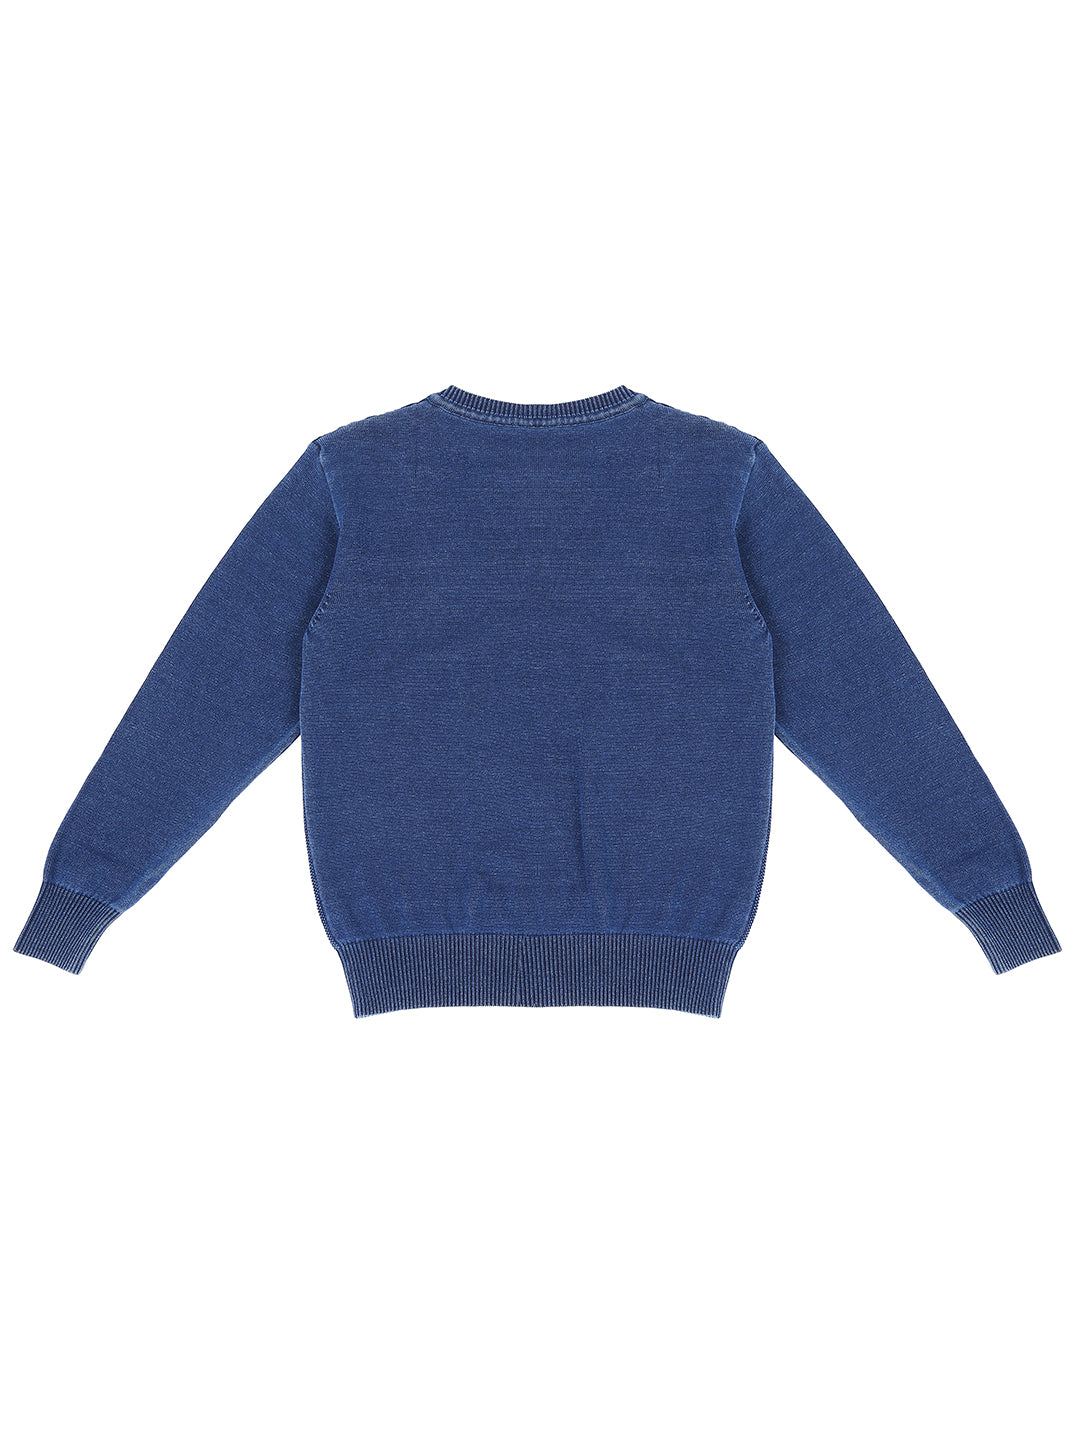 Boys Blue Solid Fleece Sweater